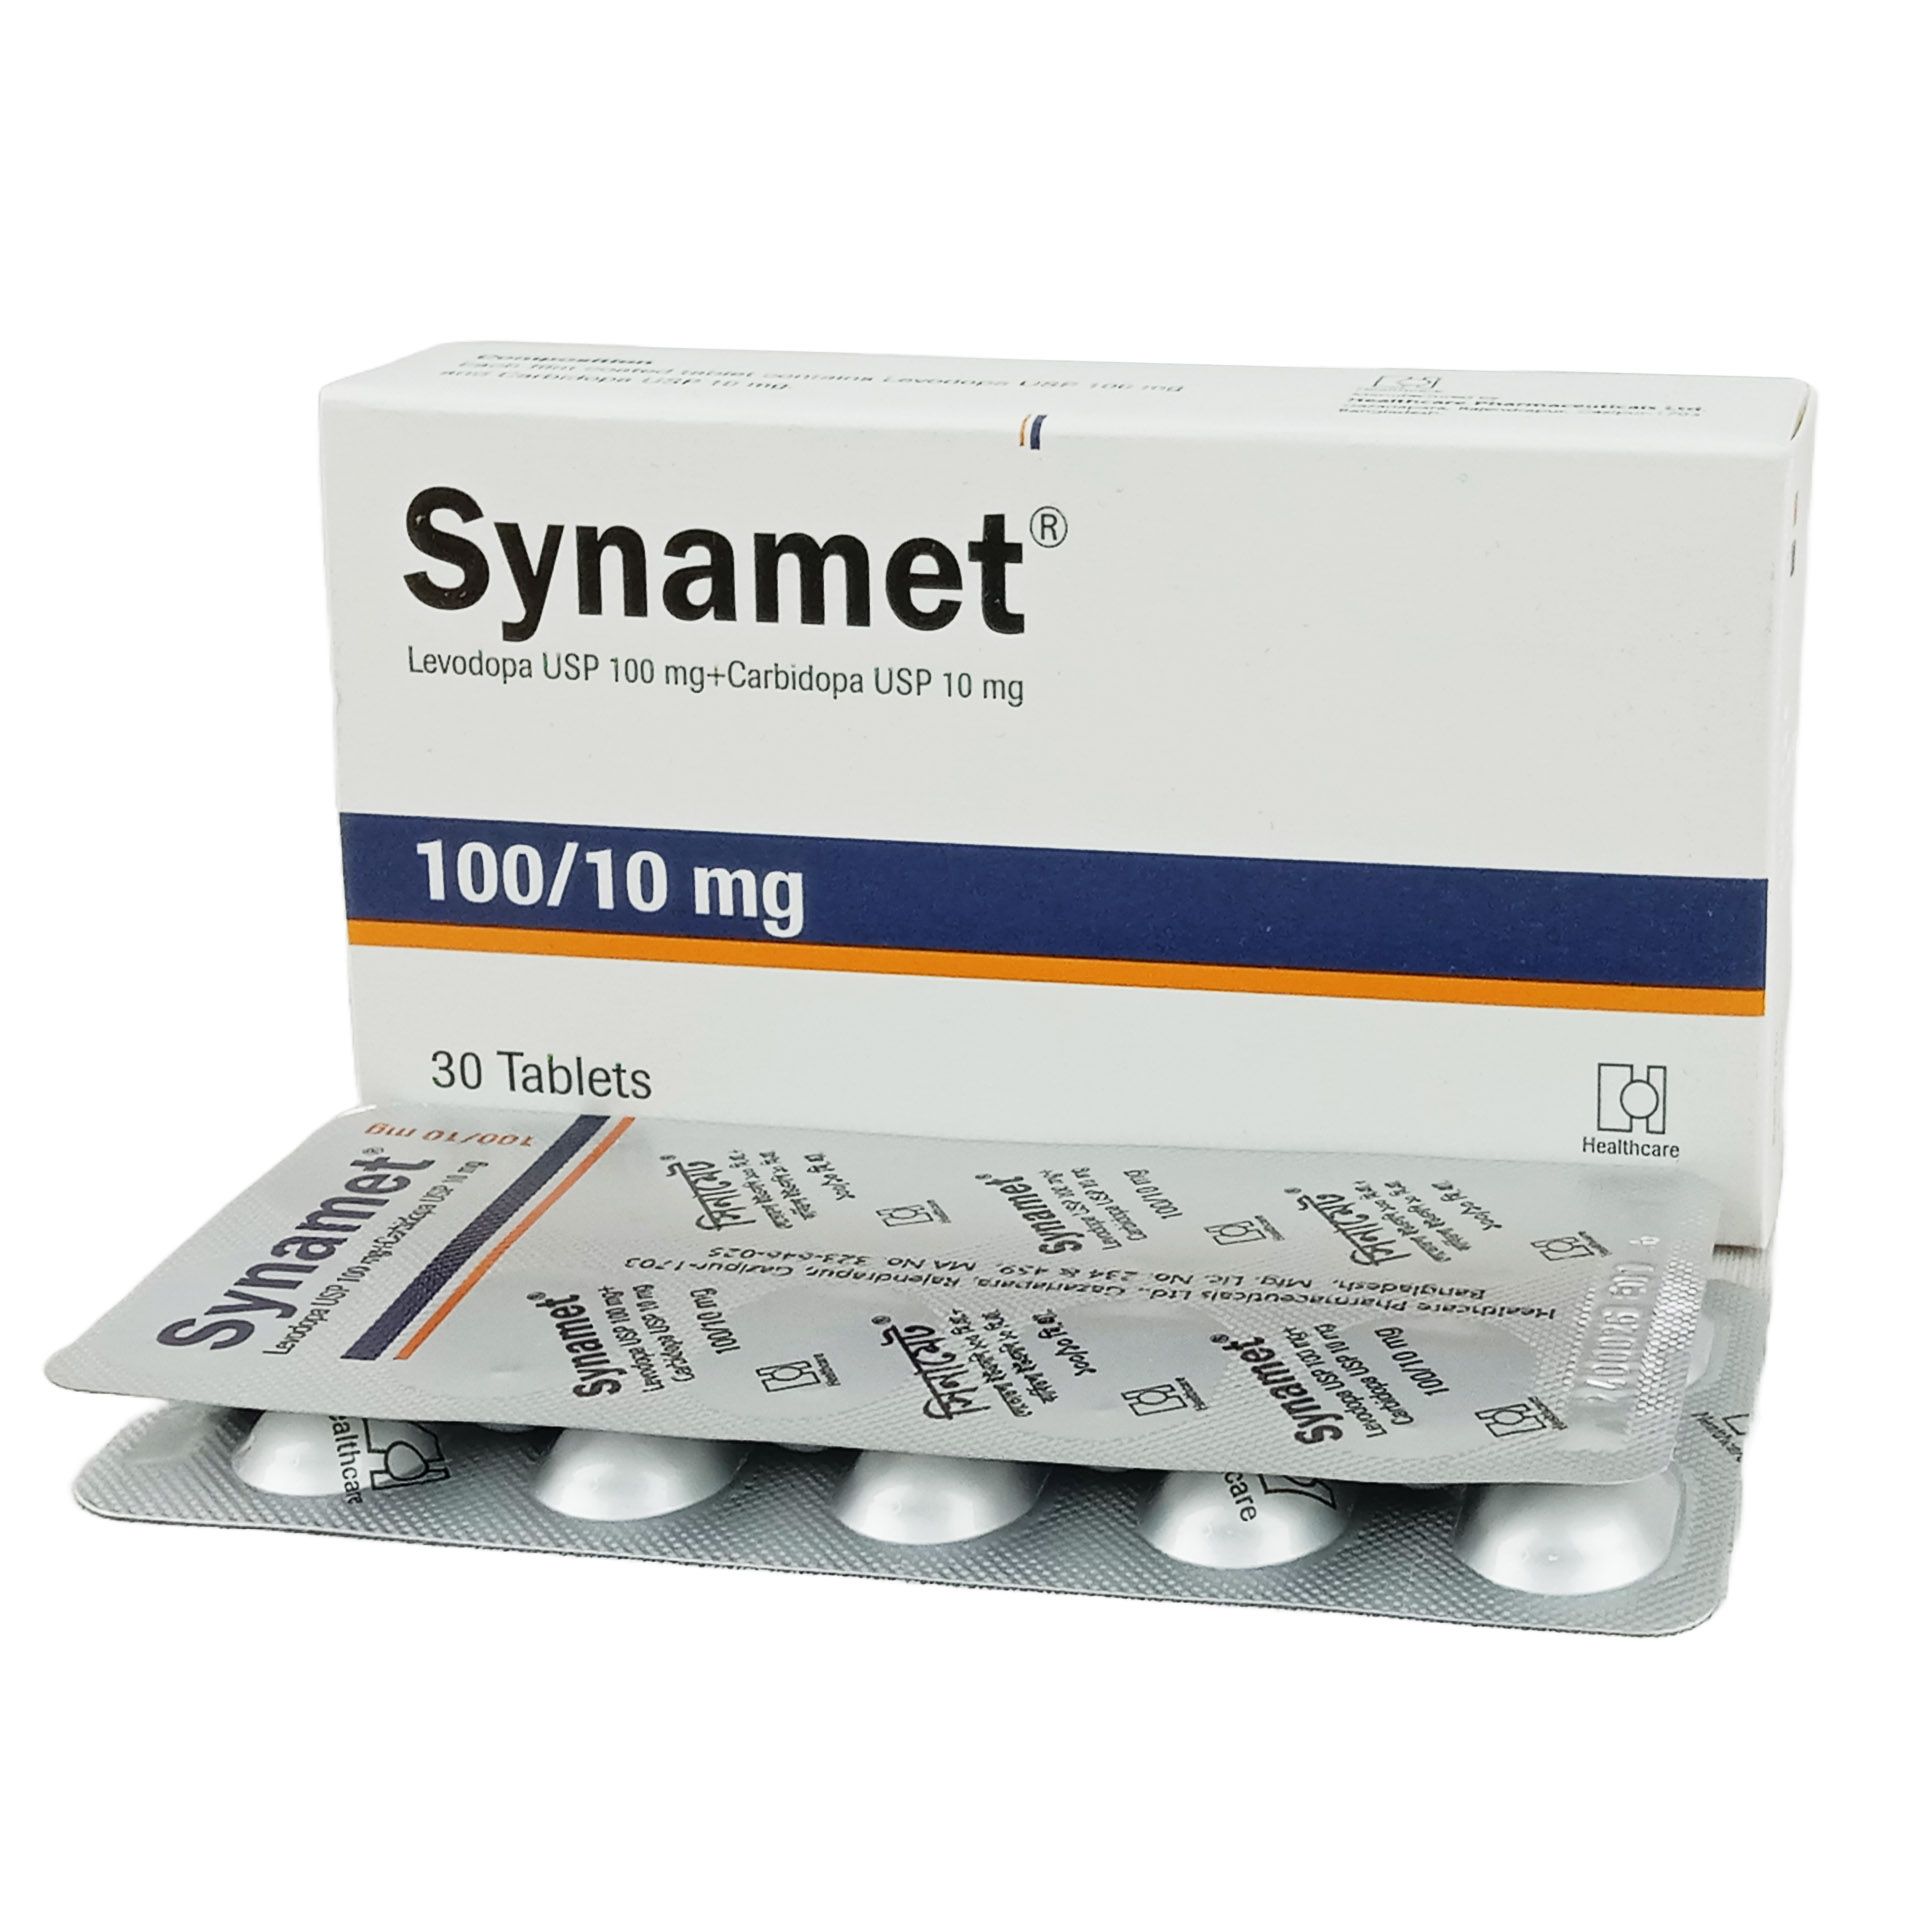 Synamet 110mg+100mg Tablet